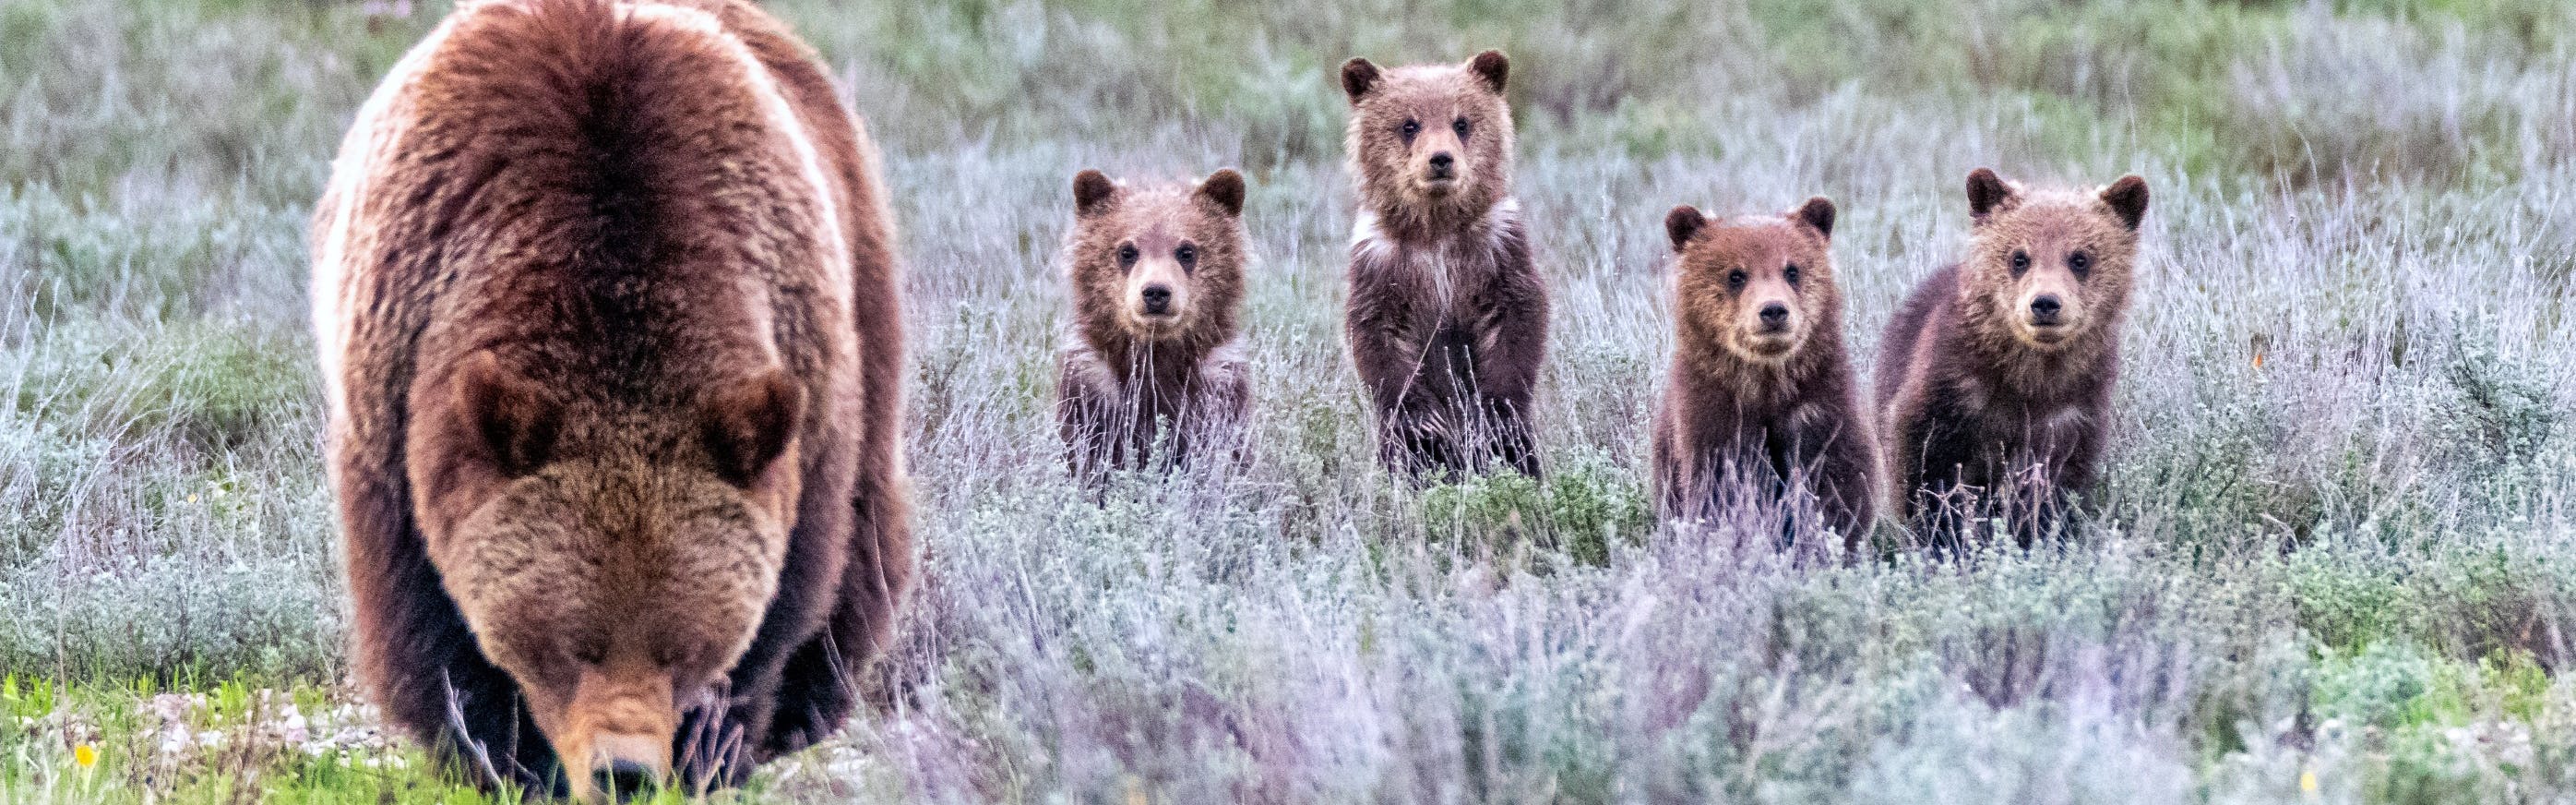 A mama bear with four baby bears